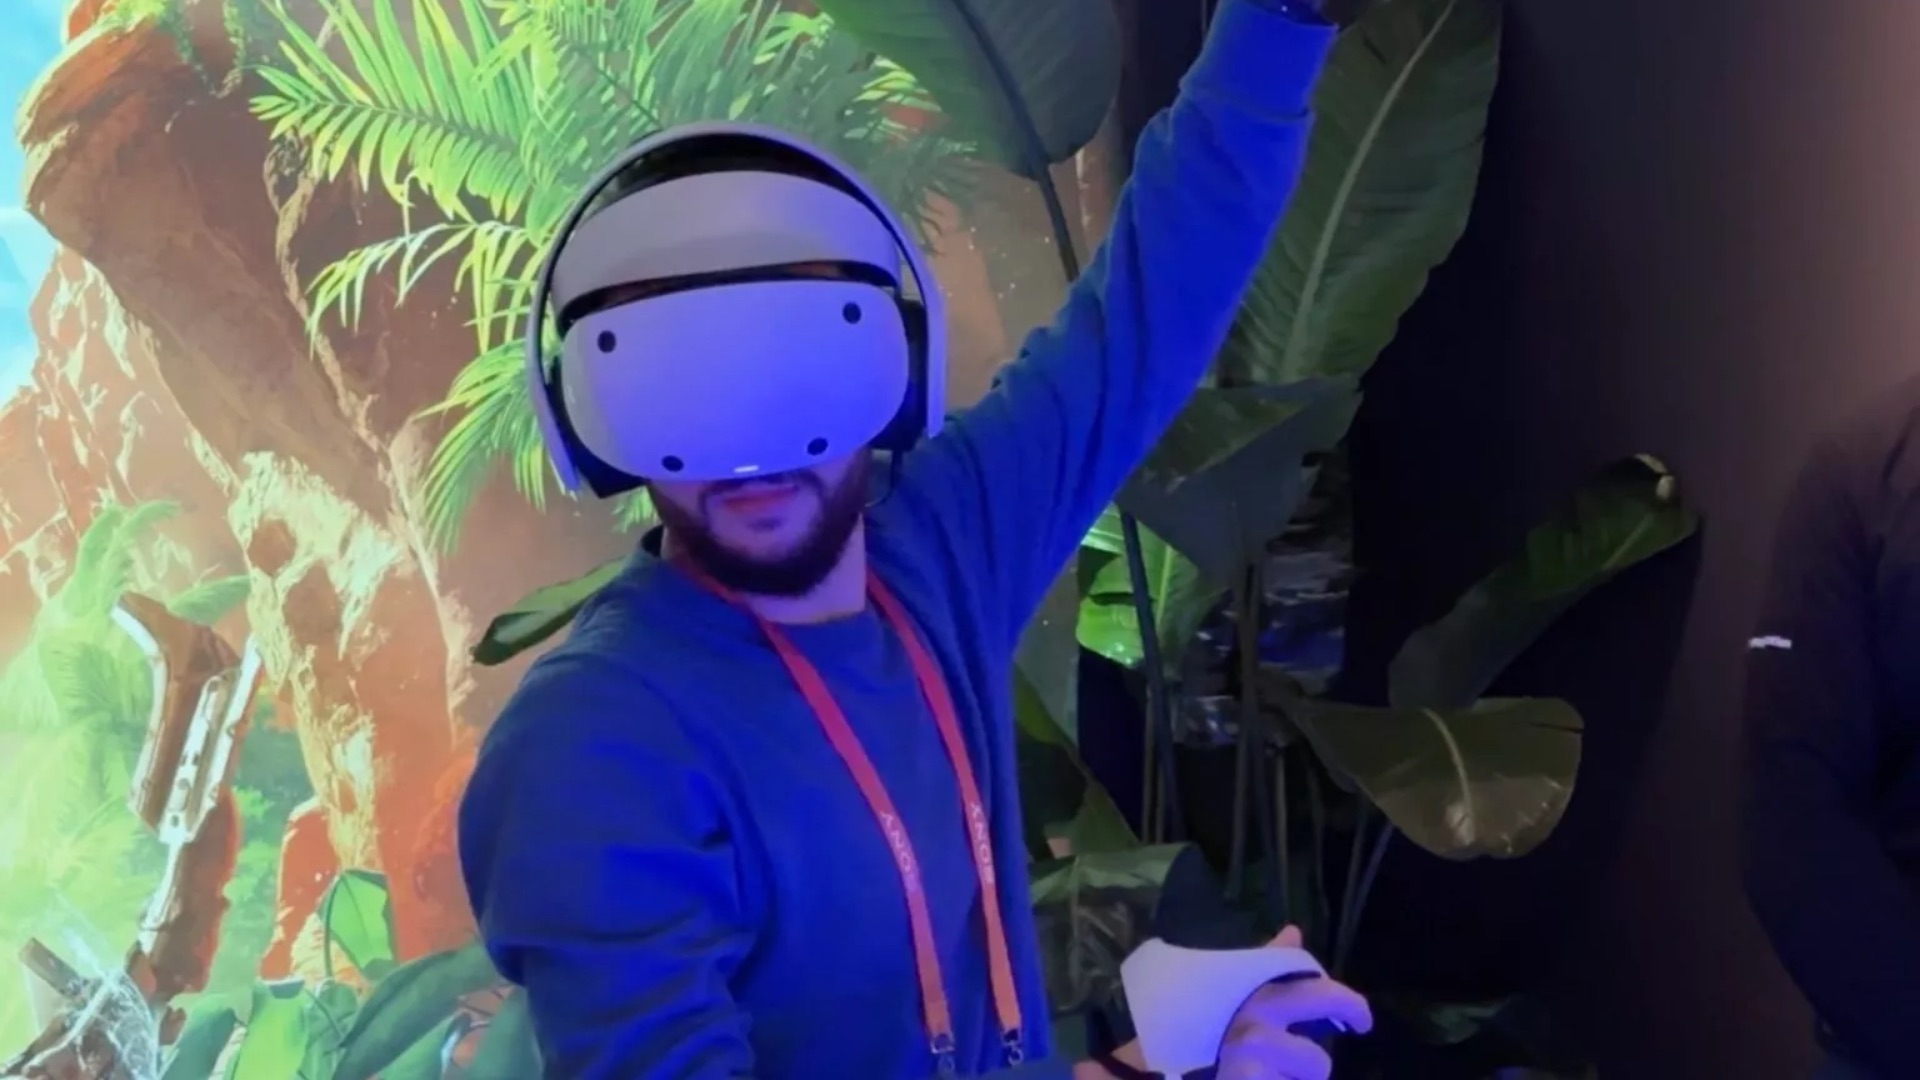 Playstation dévoile les premières images de son nouveau casque de réalité  virtuelle : le PS VR2